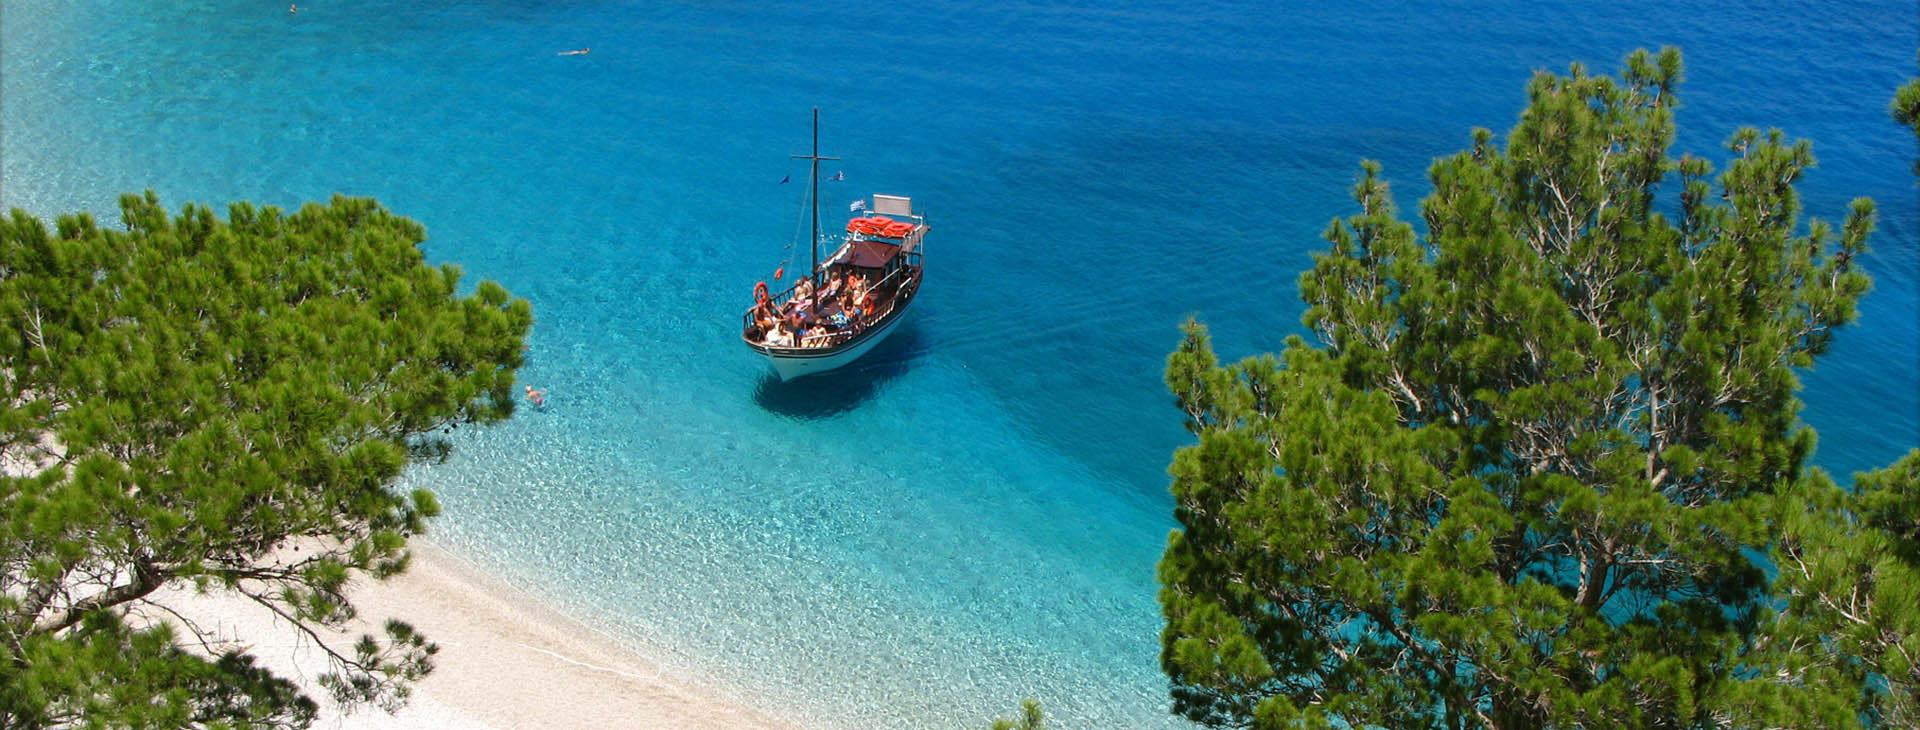 Apella beach, Karpathos island